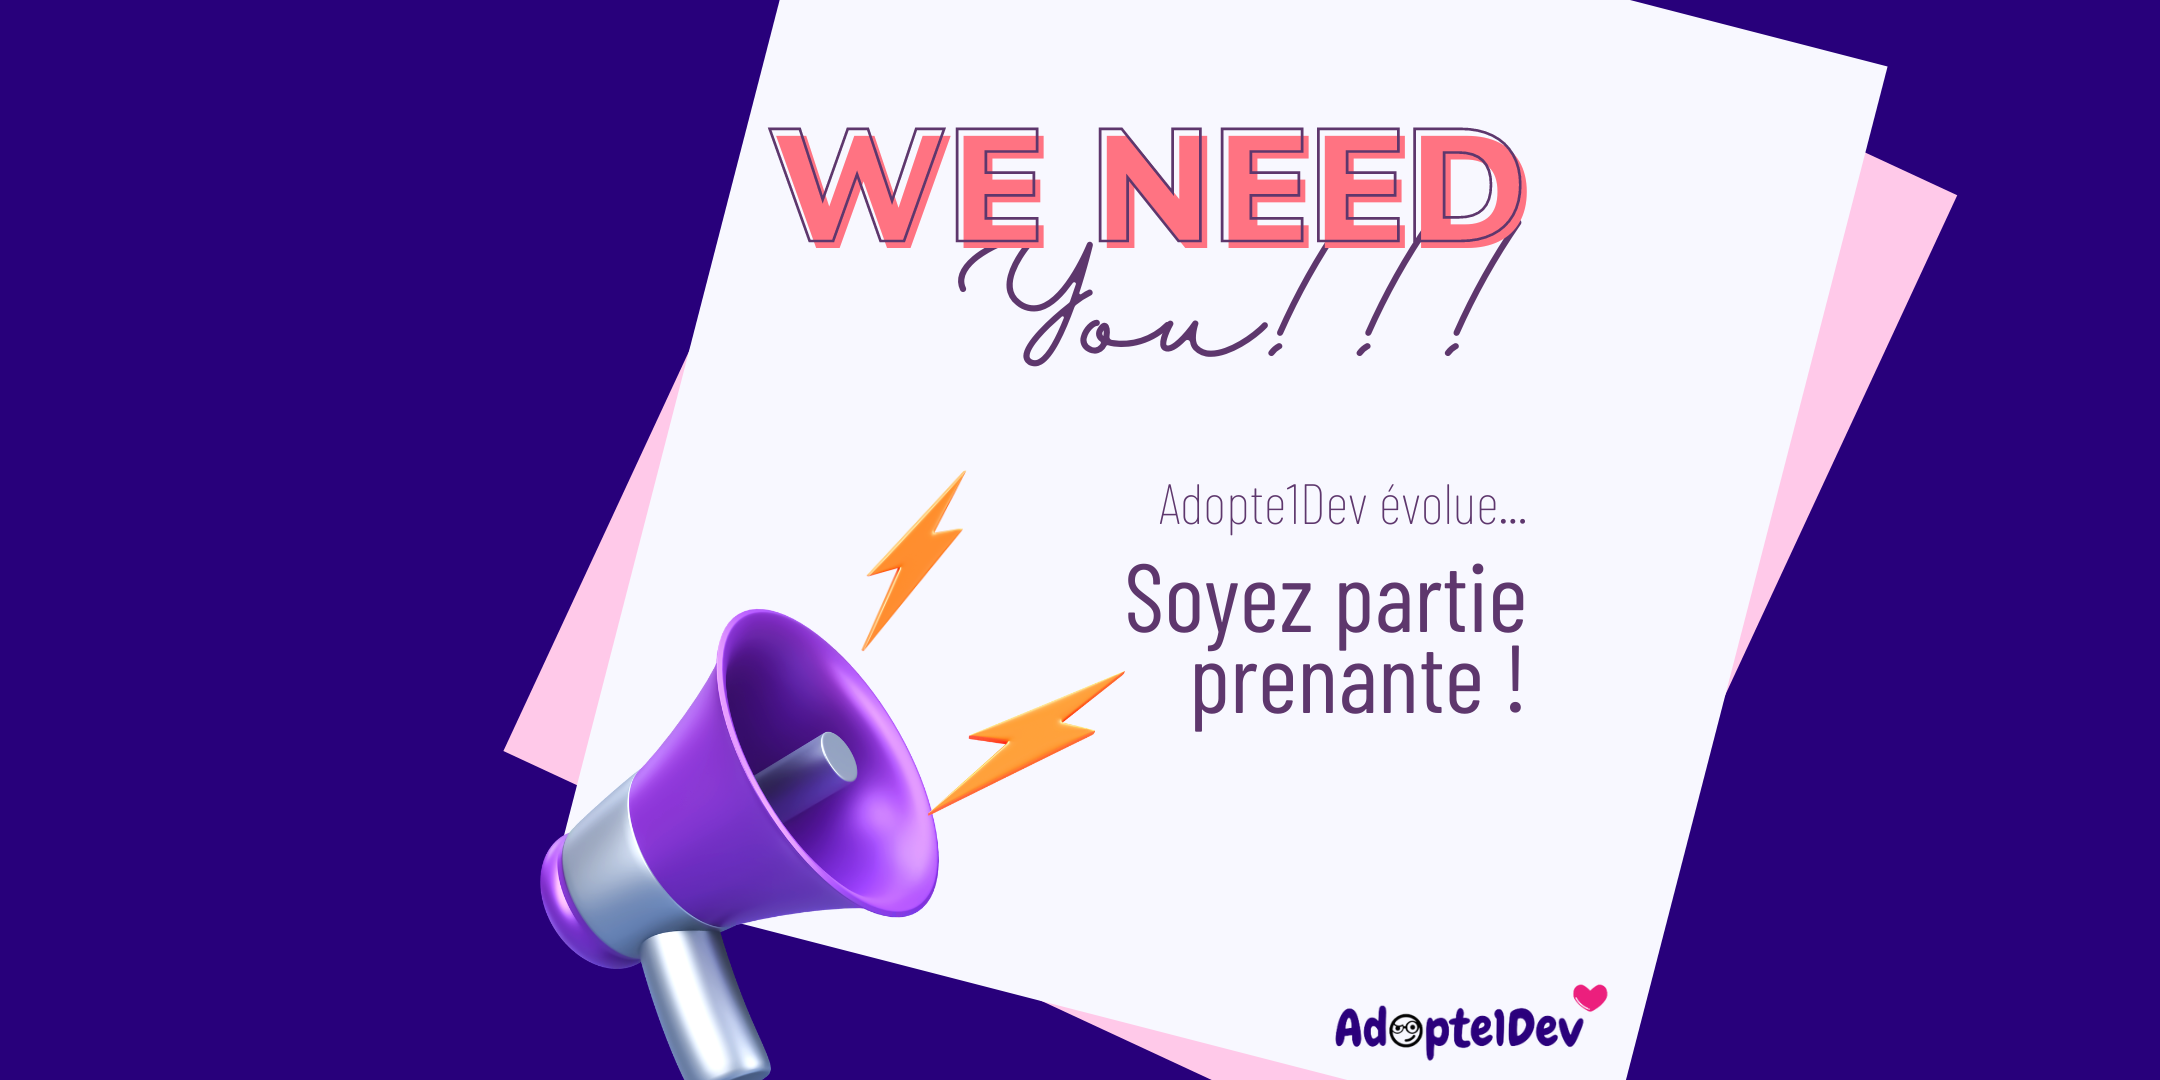 Adopte1Dev needs you